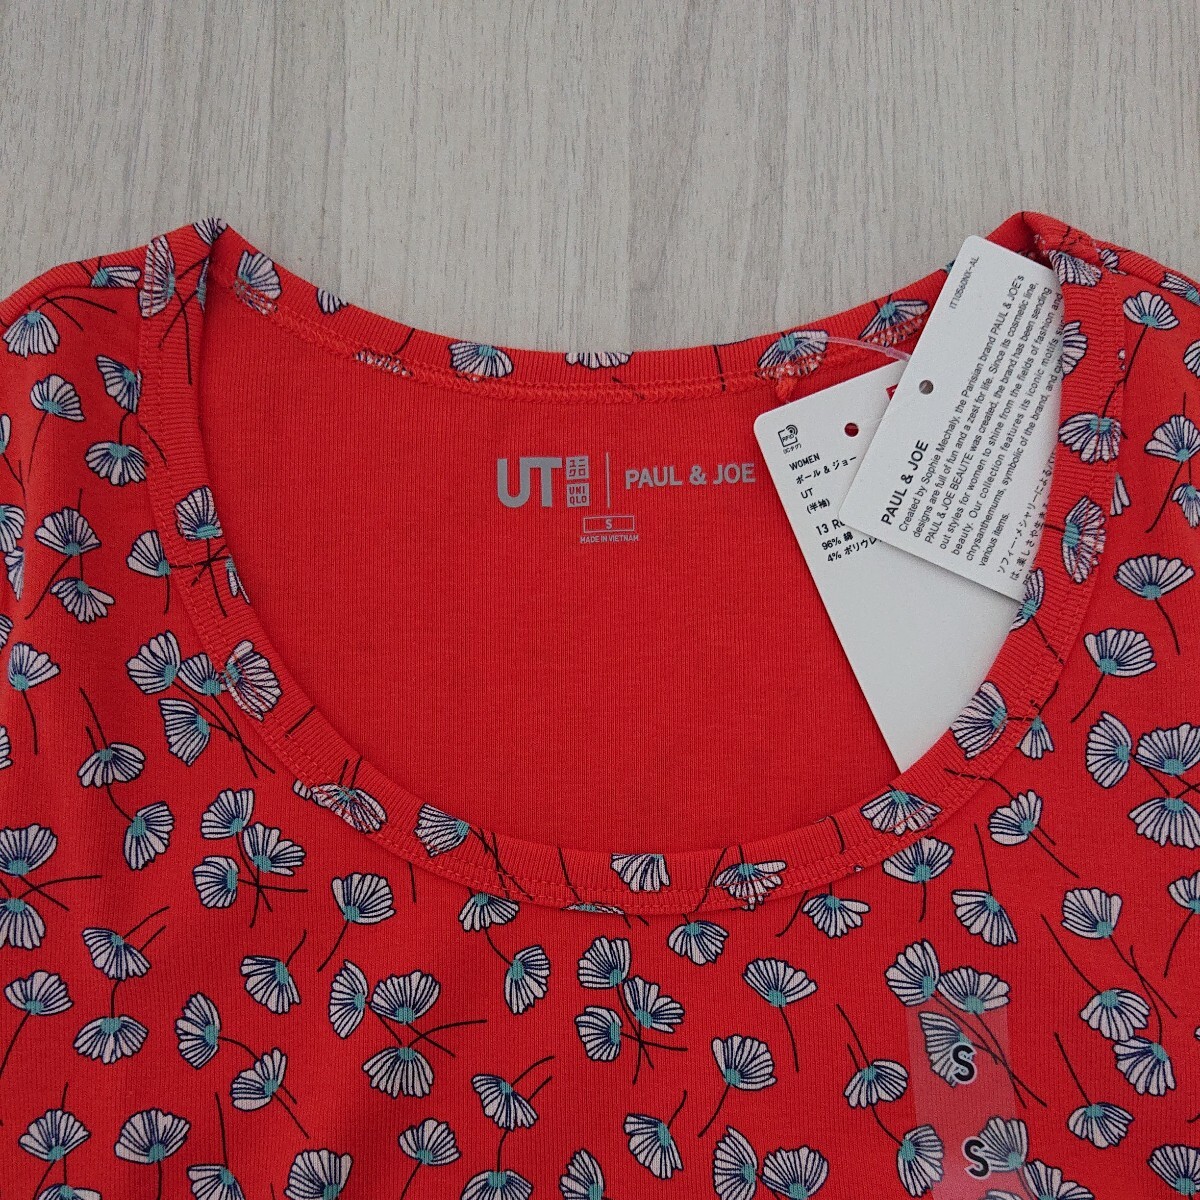 【新品未使用】ユニクロ ポール&ジョー 半袖 花柄 Tシャツ UT 赤 S